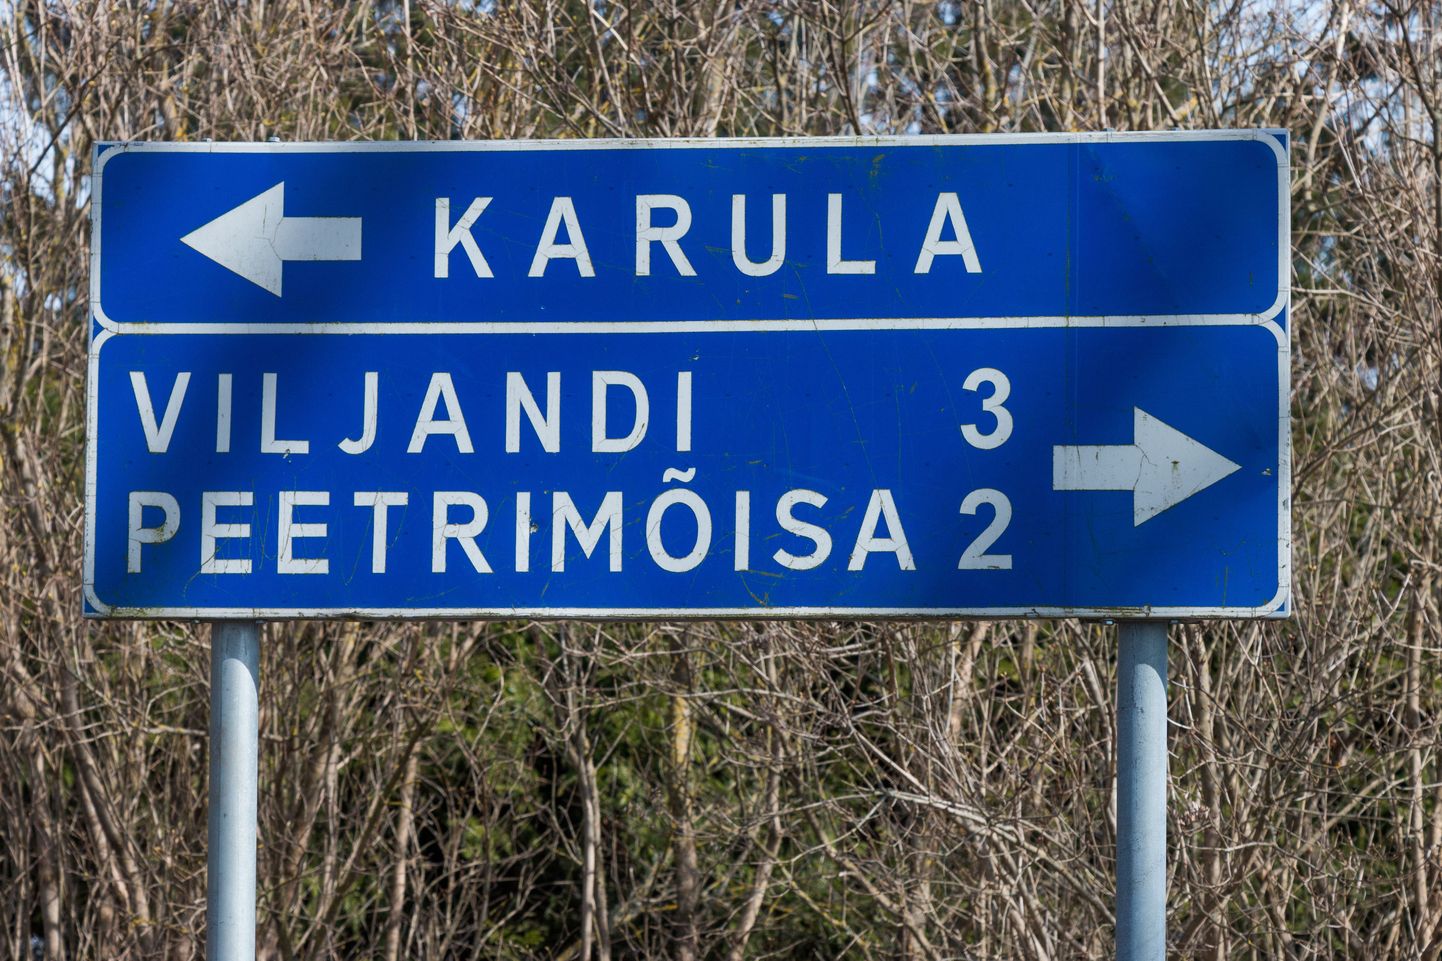 Surnud ja seni tuvastamata mees avastati ühest tühjast majast Viljandi külje alt Karula külast.